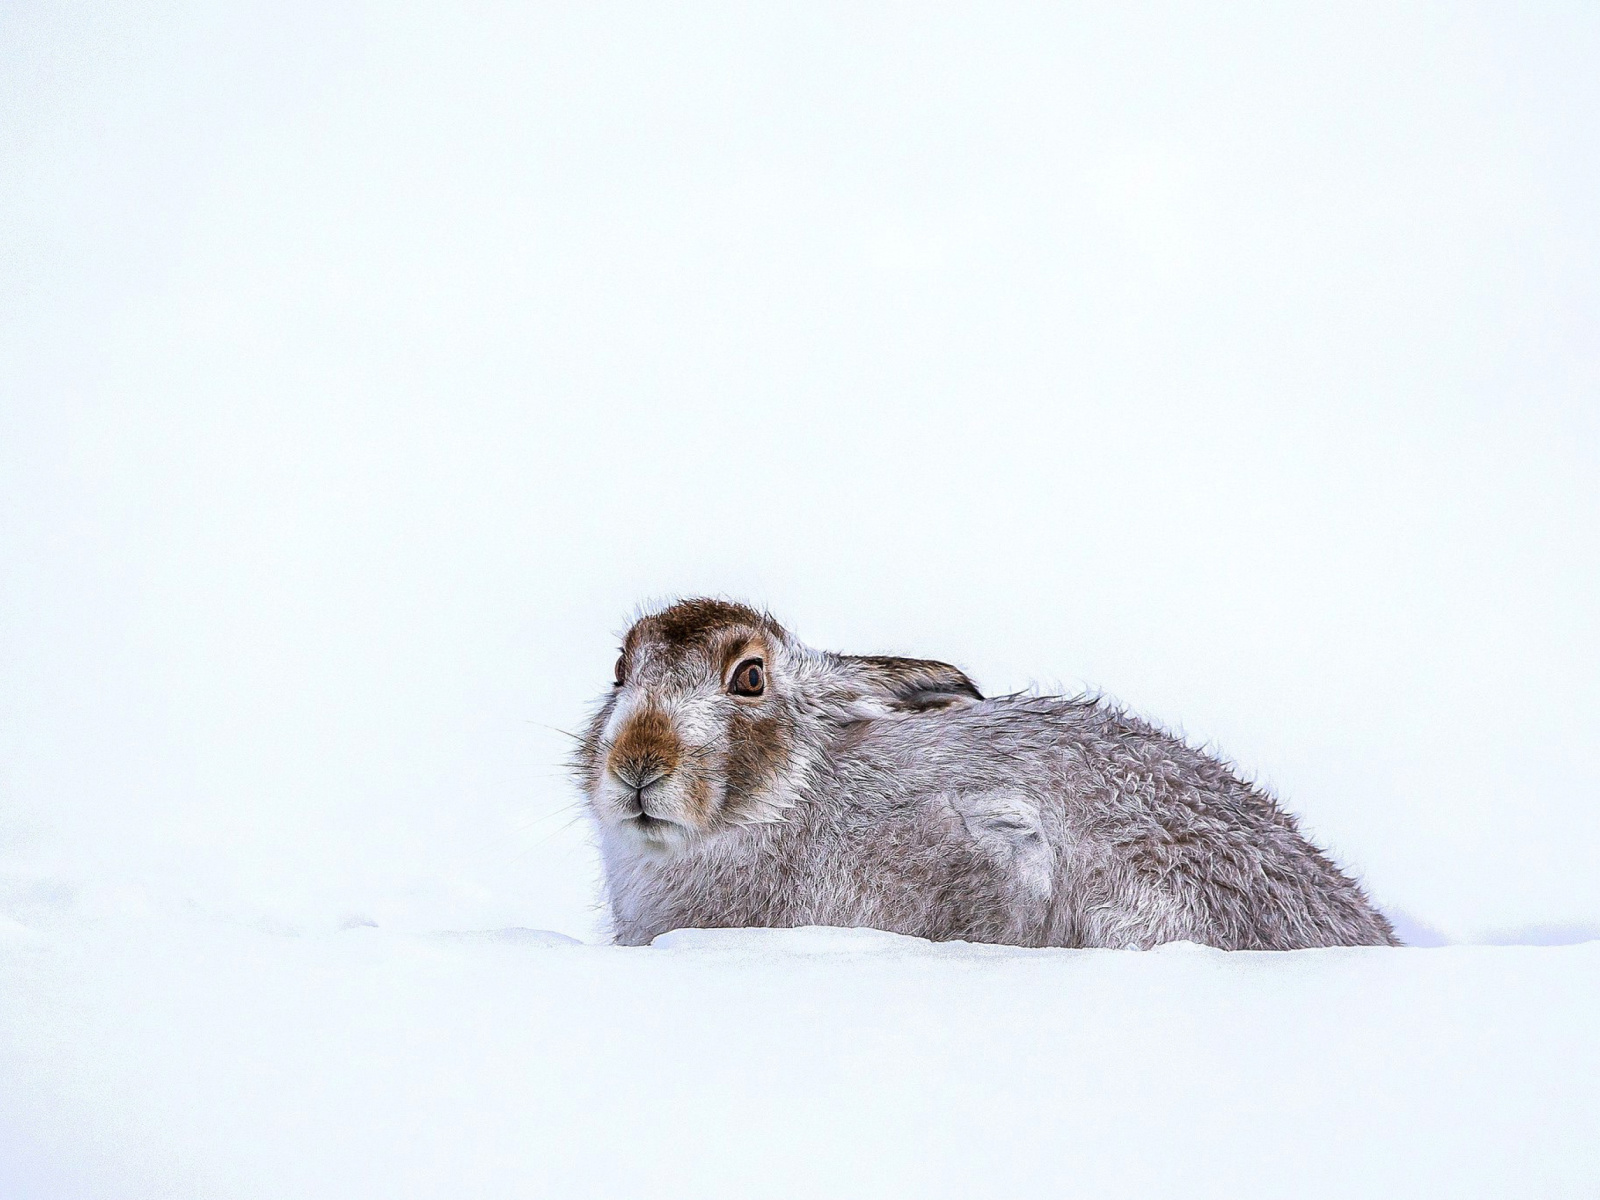 Обои Rabbit in Snow 1600x1200